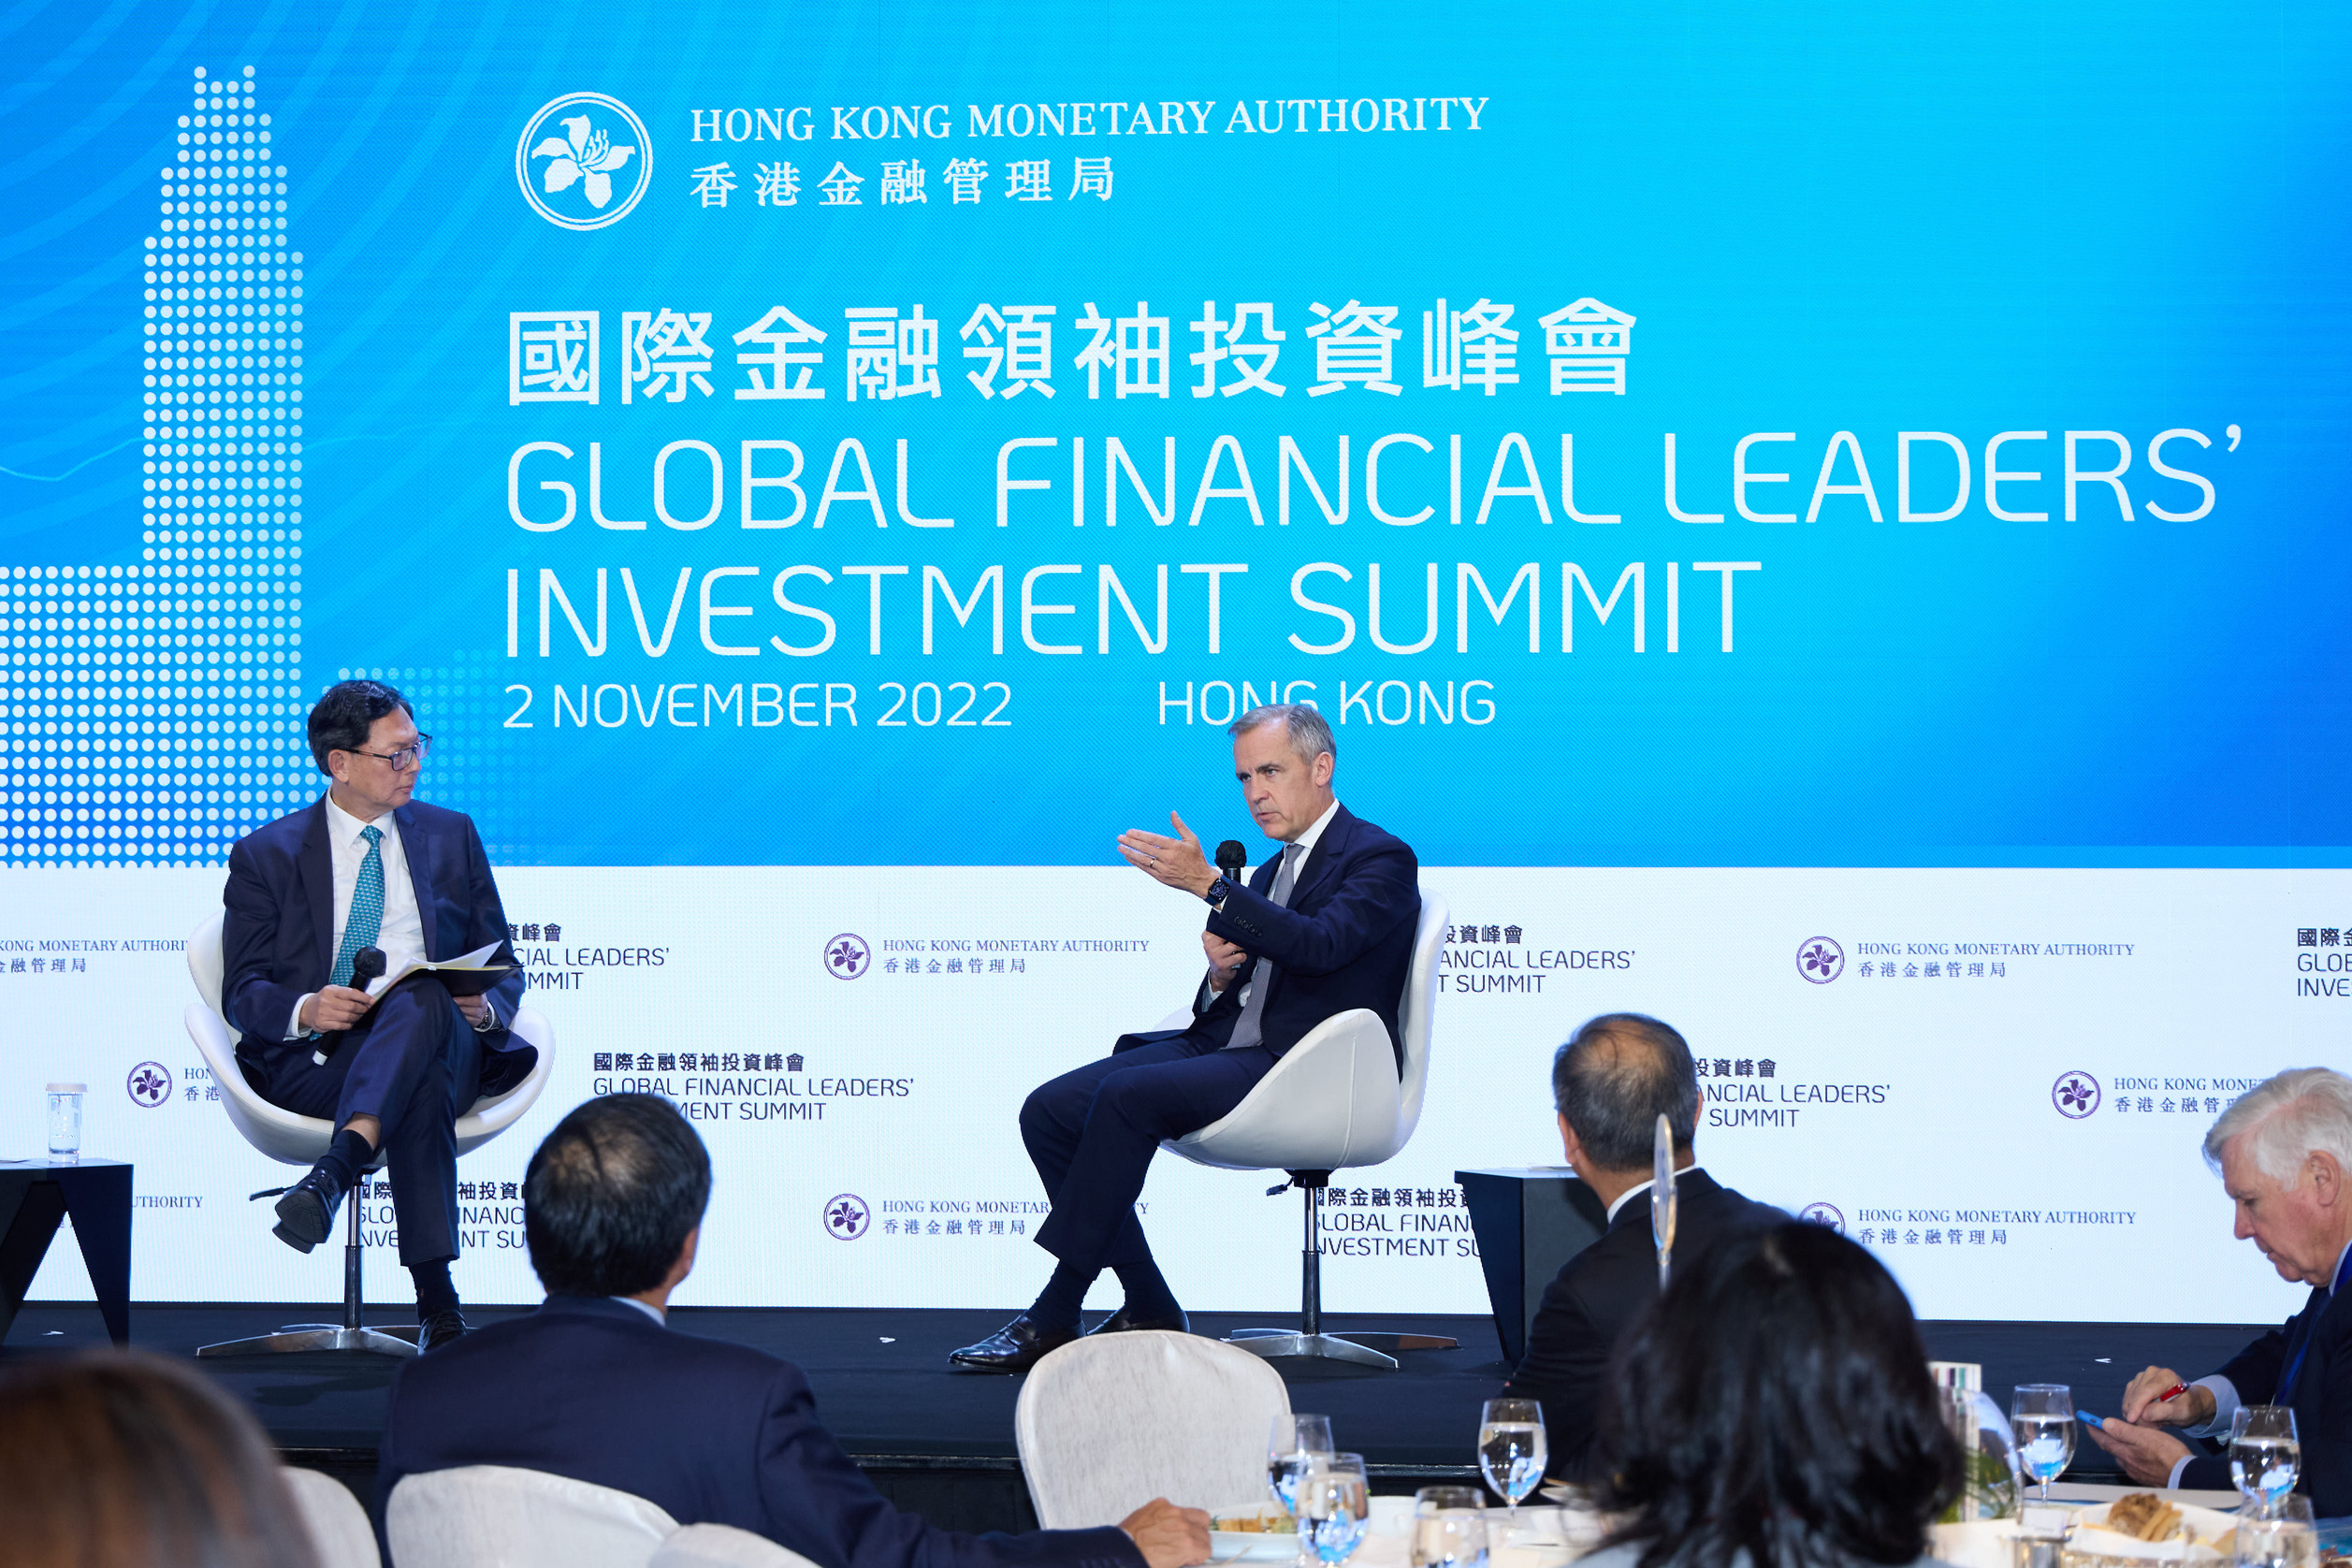 （左至右） 博枫资产管理公司副董事长兼 ESG 和影响力基金投资负责人、联合国气候行动和金融问题特使 Mark Carney；香港金融学院高级顾问、香港金融管理局前总裁陈德霖。